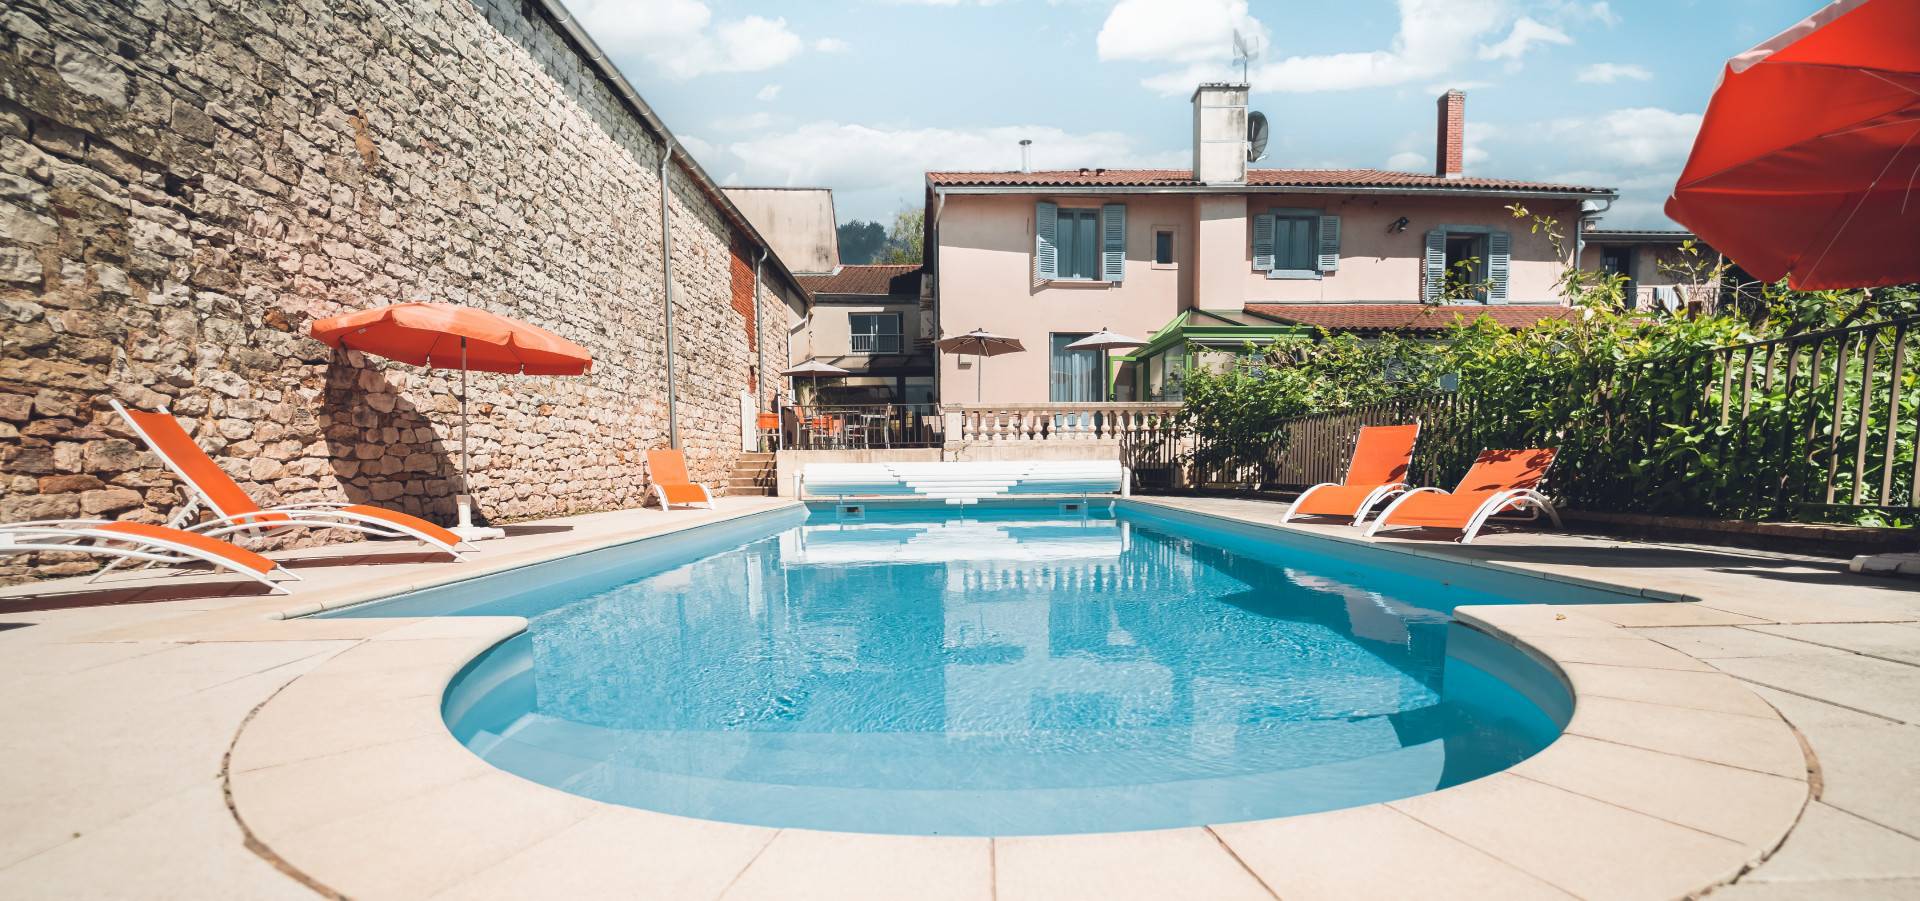 Hôtel avec piscine en Bourgogne | Hôtel & Restaurant Vuillot à Cuiseaux